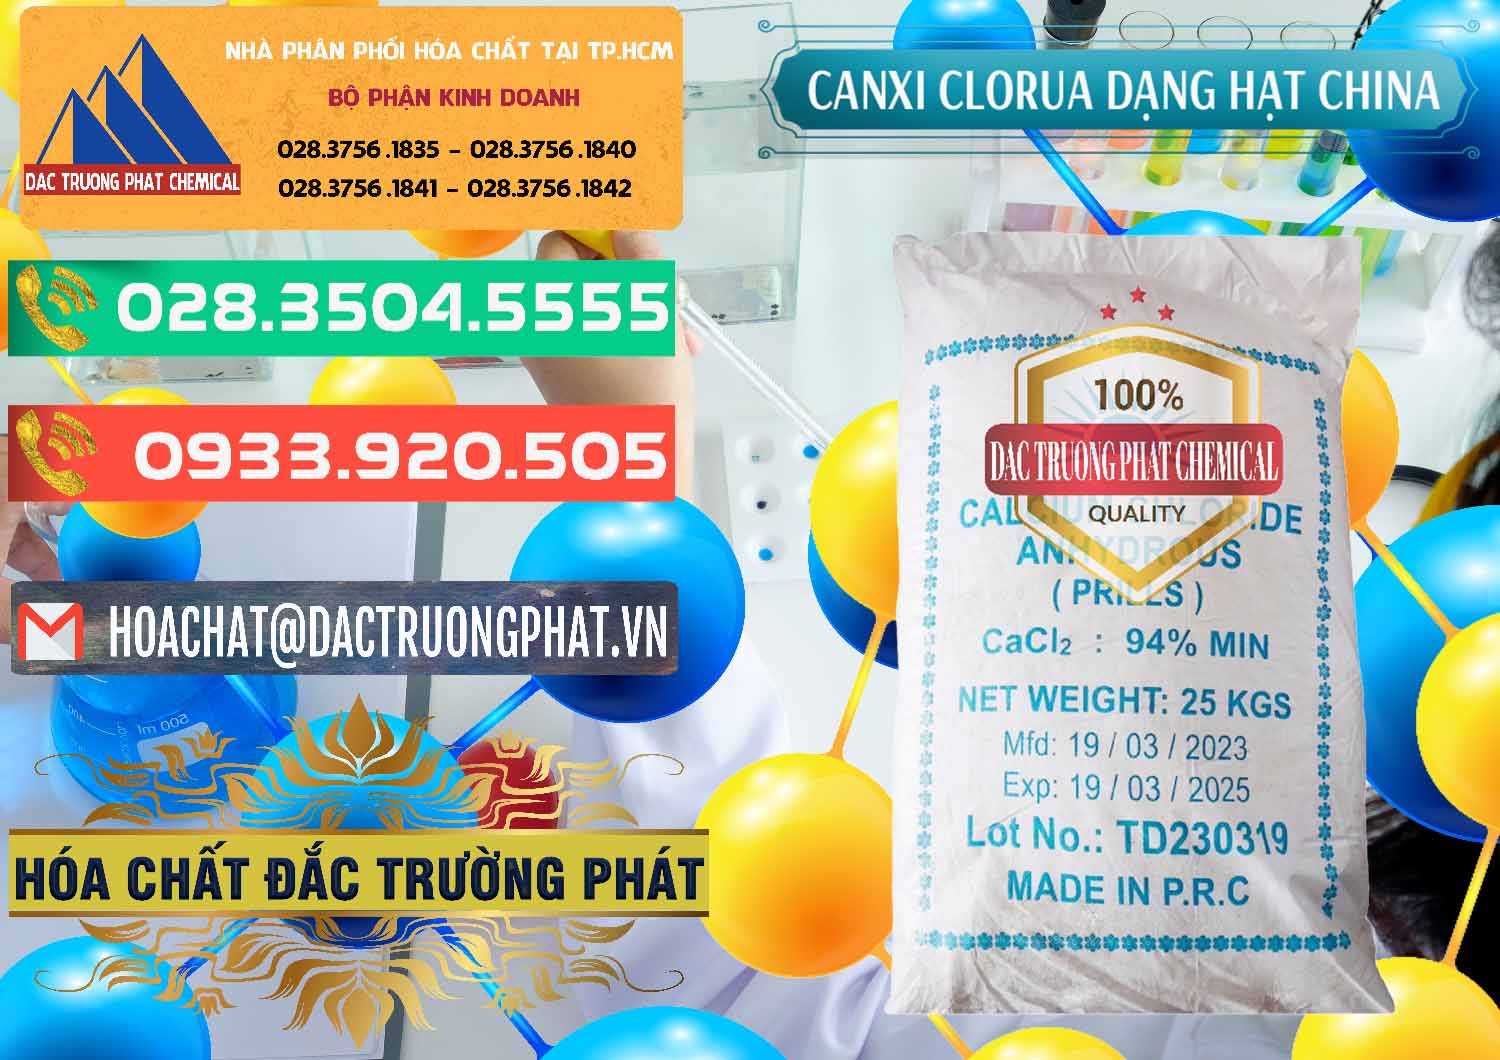 Nhà phân phối _ bán CaCl2 – Canxi Clorua 94% Dạng Hạt Trung Quốc China - 0373 - Chuyên kinh doanh - cung cấp hóa chất tại TP.HCM - congtyhoachat.com.vn